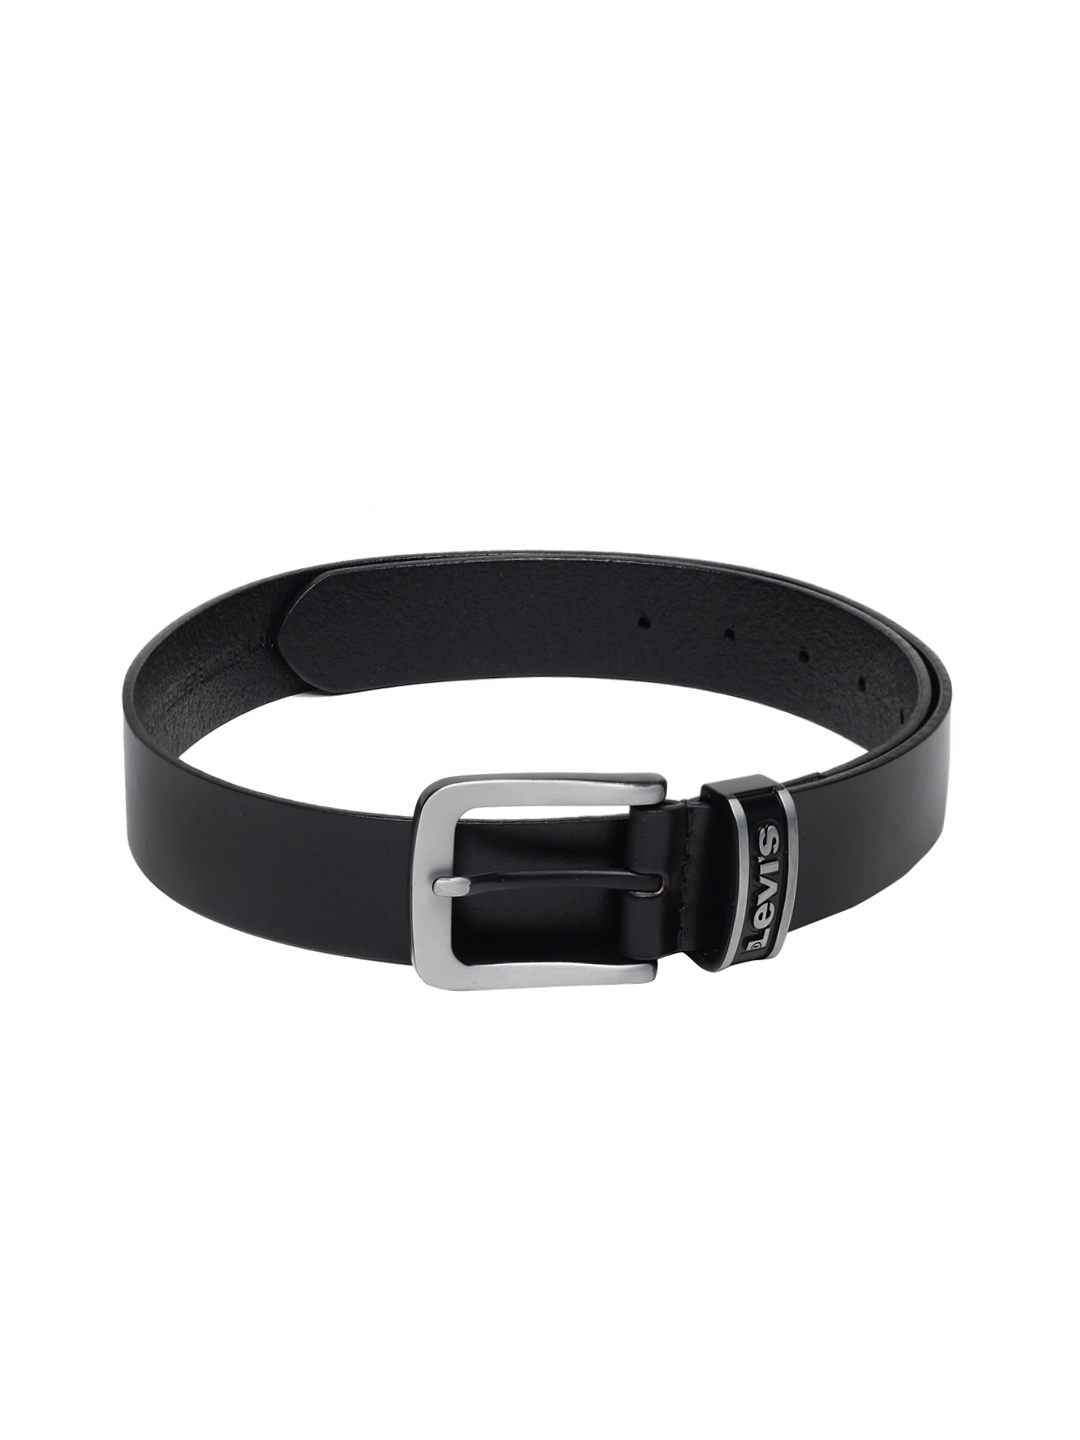 Buy Levis Men Black Solid Belt - Belts for Men 7097117 | Myntra